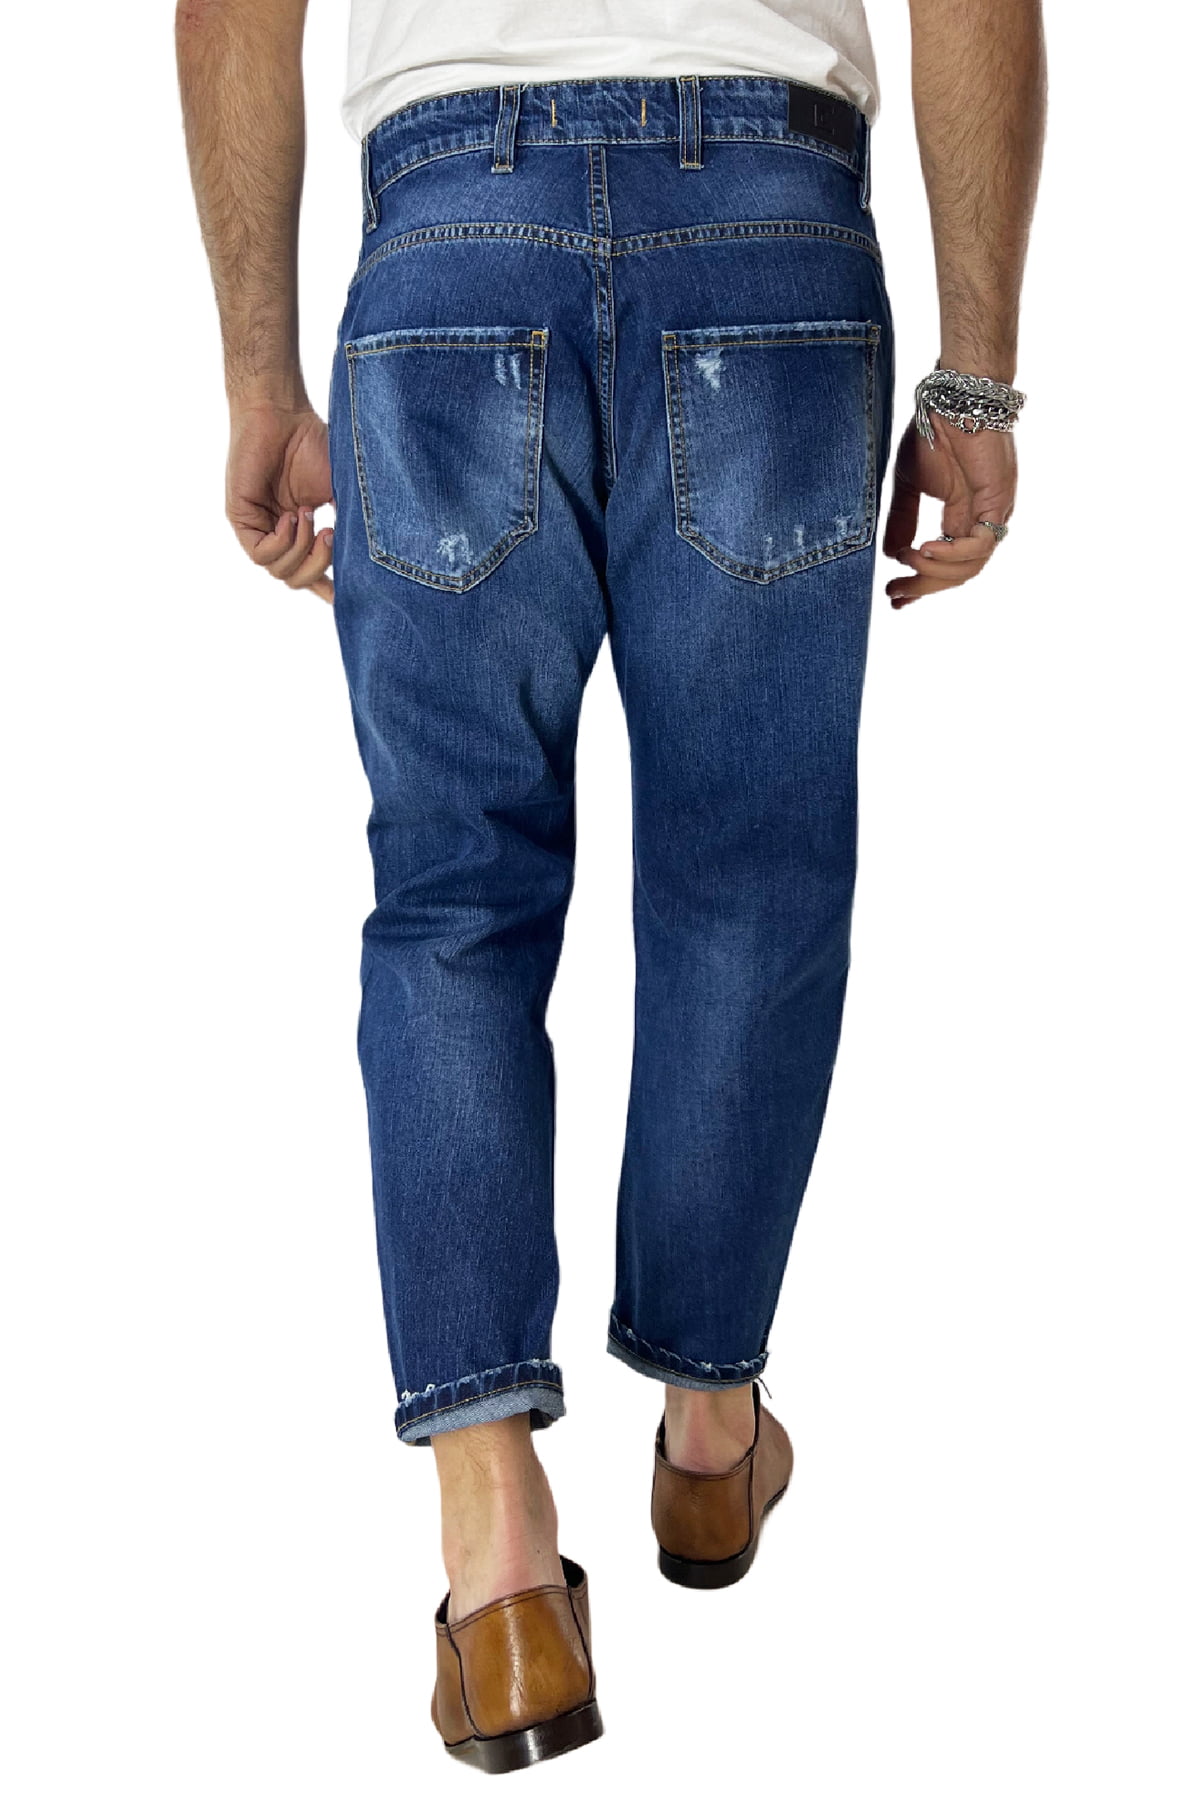 Jeans strappati da uomo con sfumature bianche e schizzi di pittura regular fit made in italy